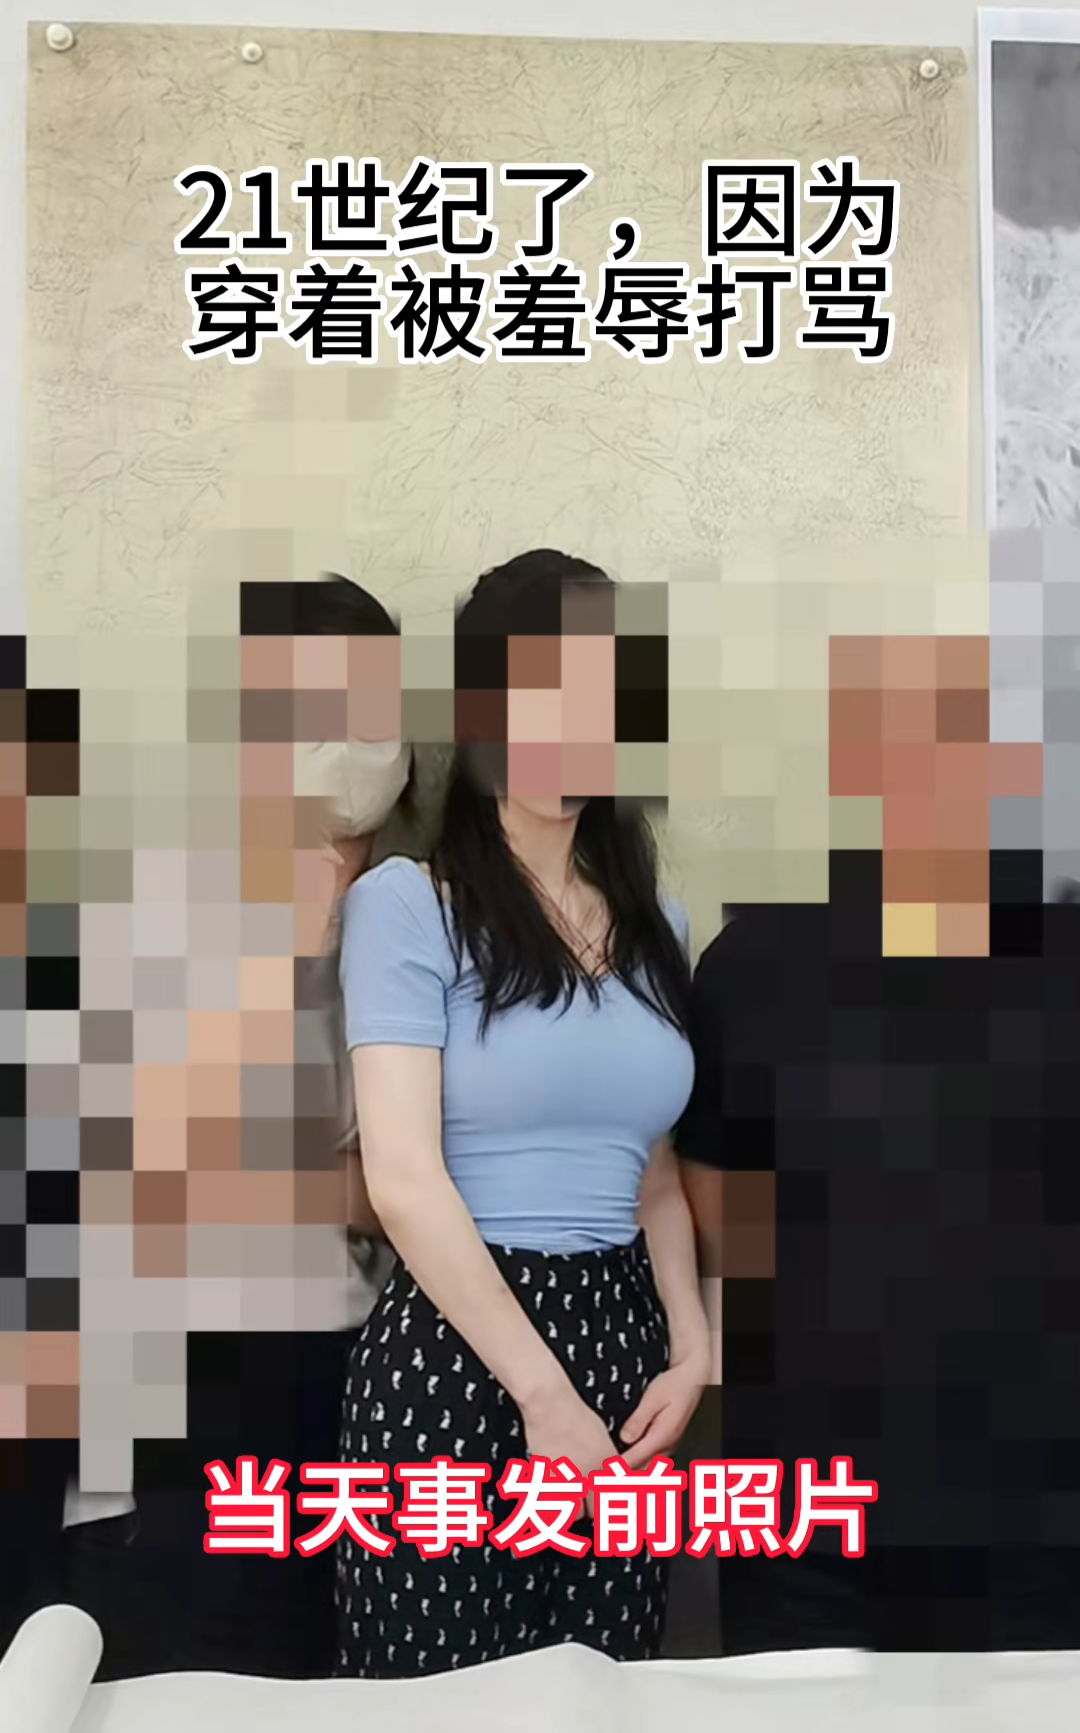 恶劣！广东女大学生被骗拍“裸足”照片，挂在网上公然售卖！